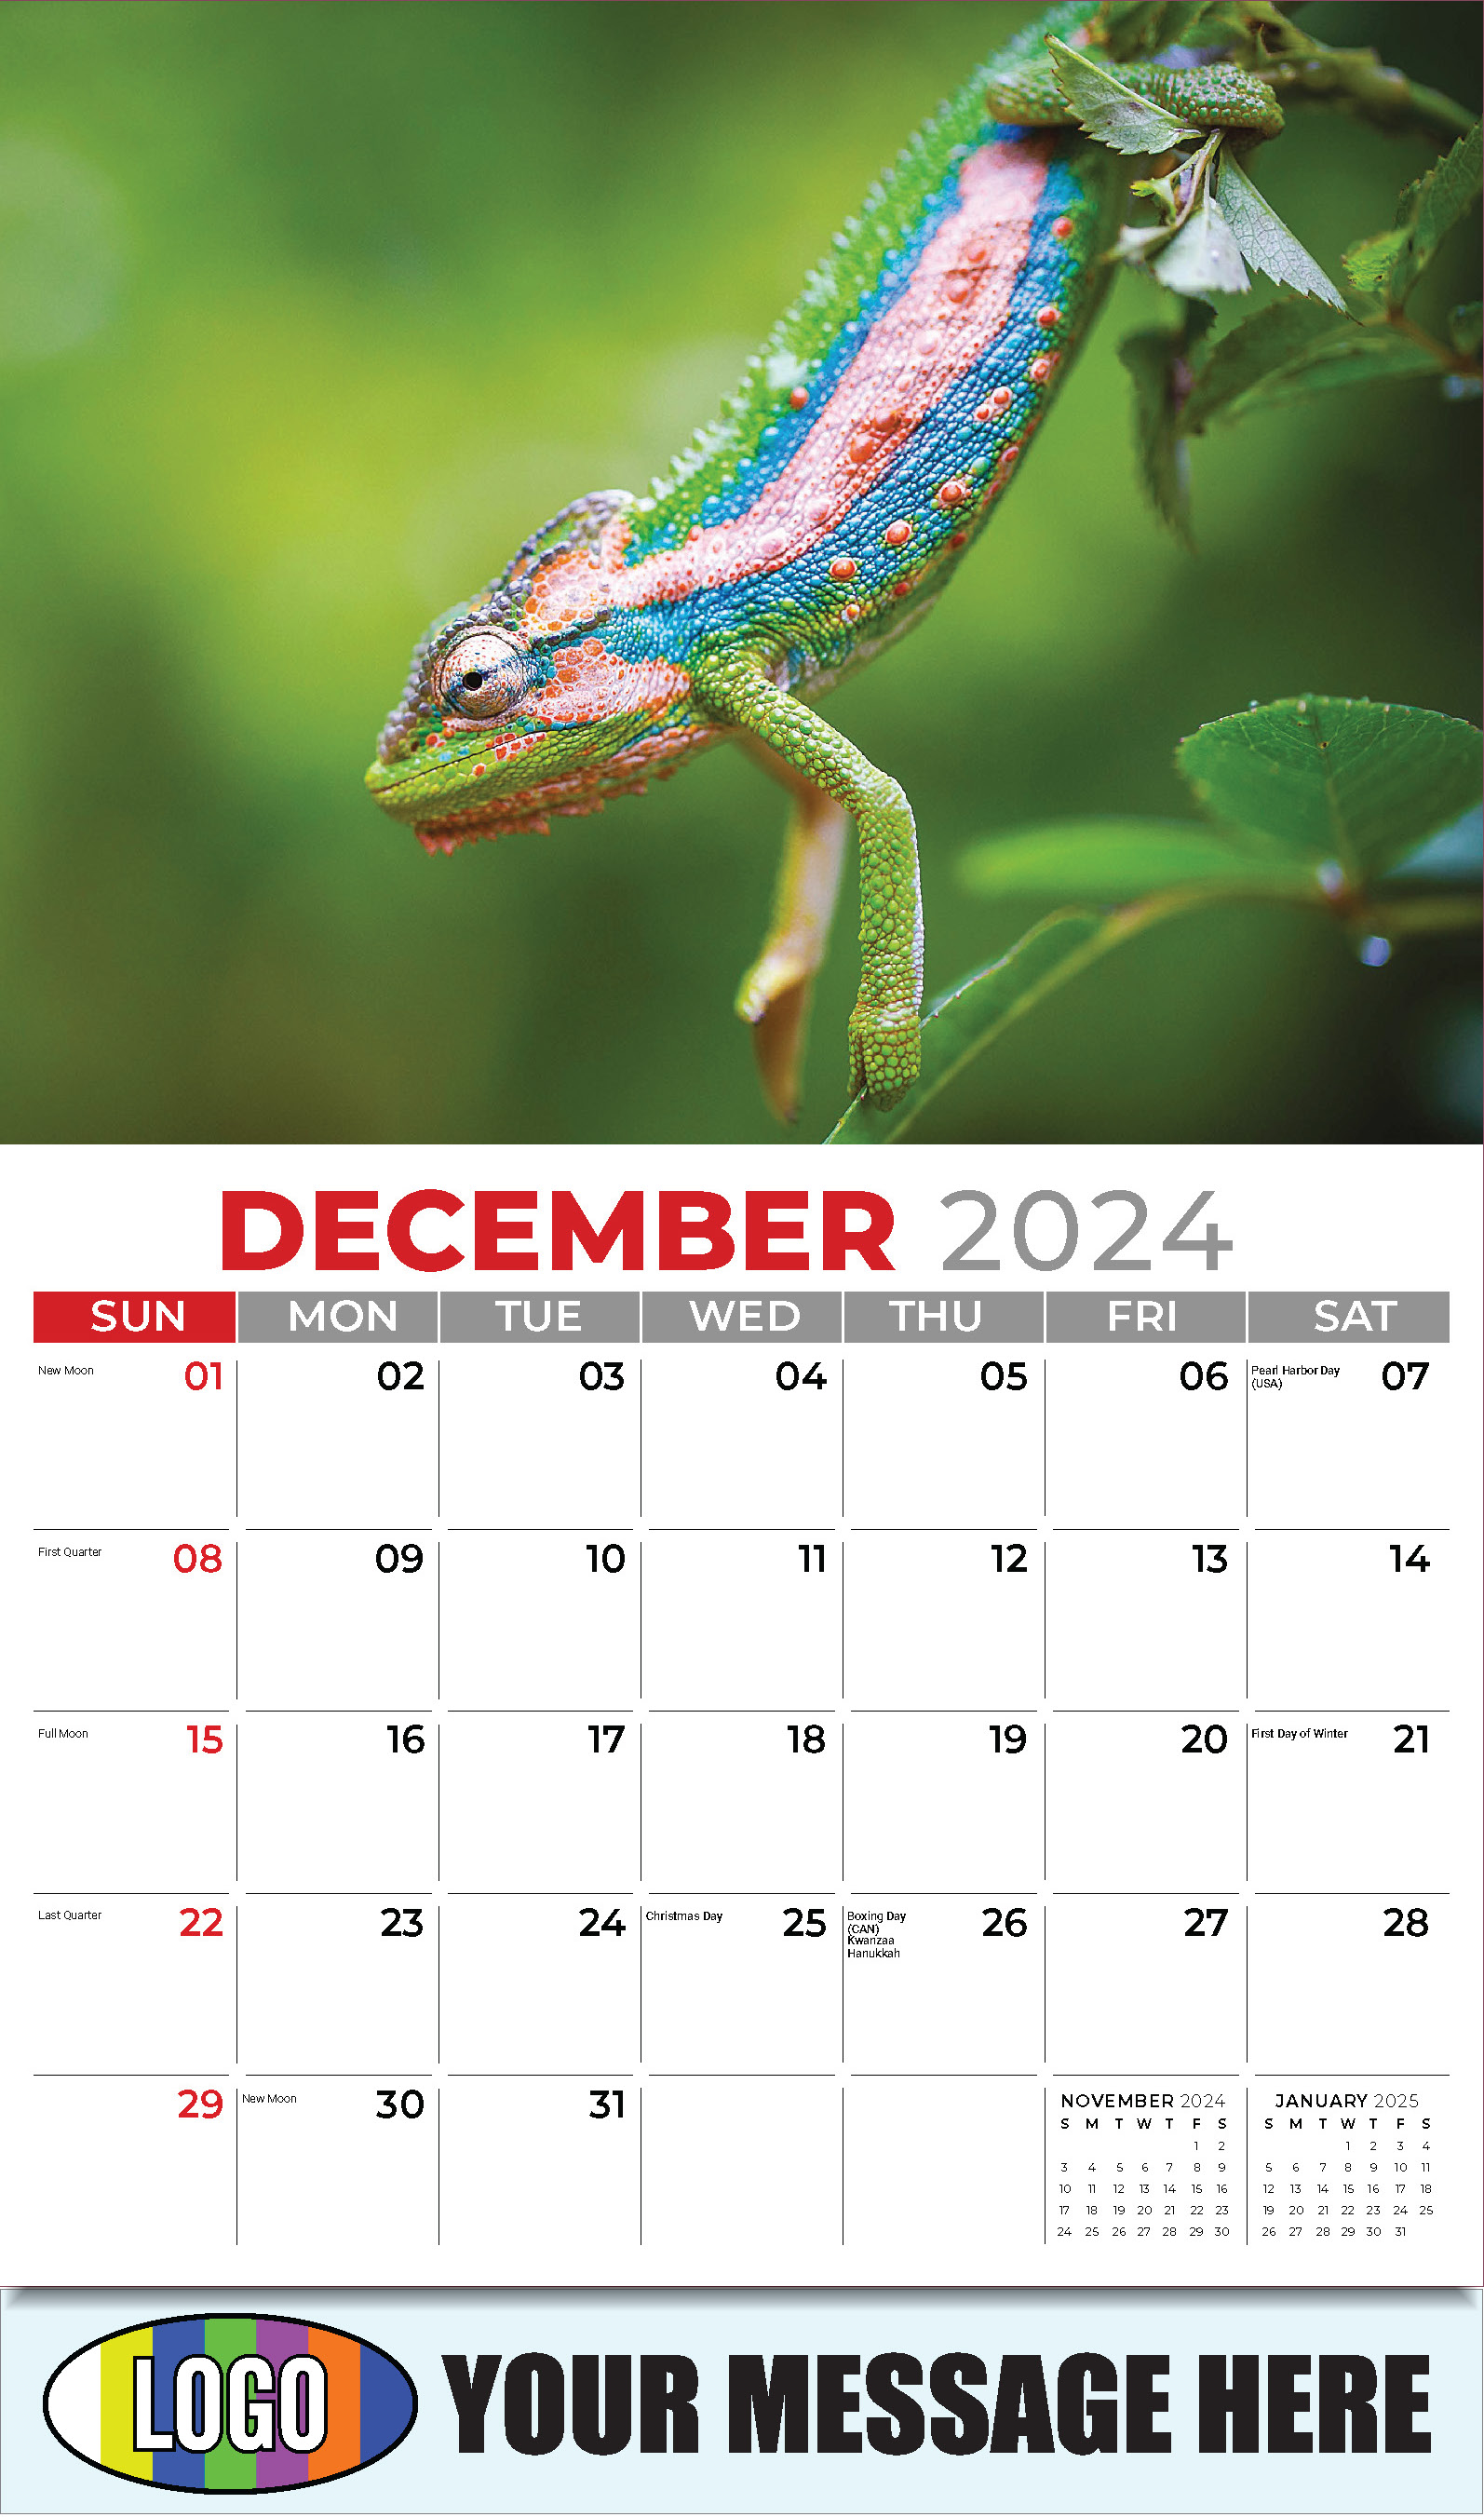 Pets 2025 Business Advertising Wall Calendar - December_a